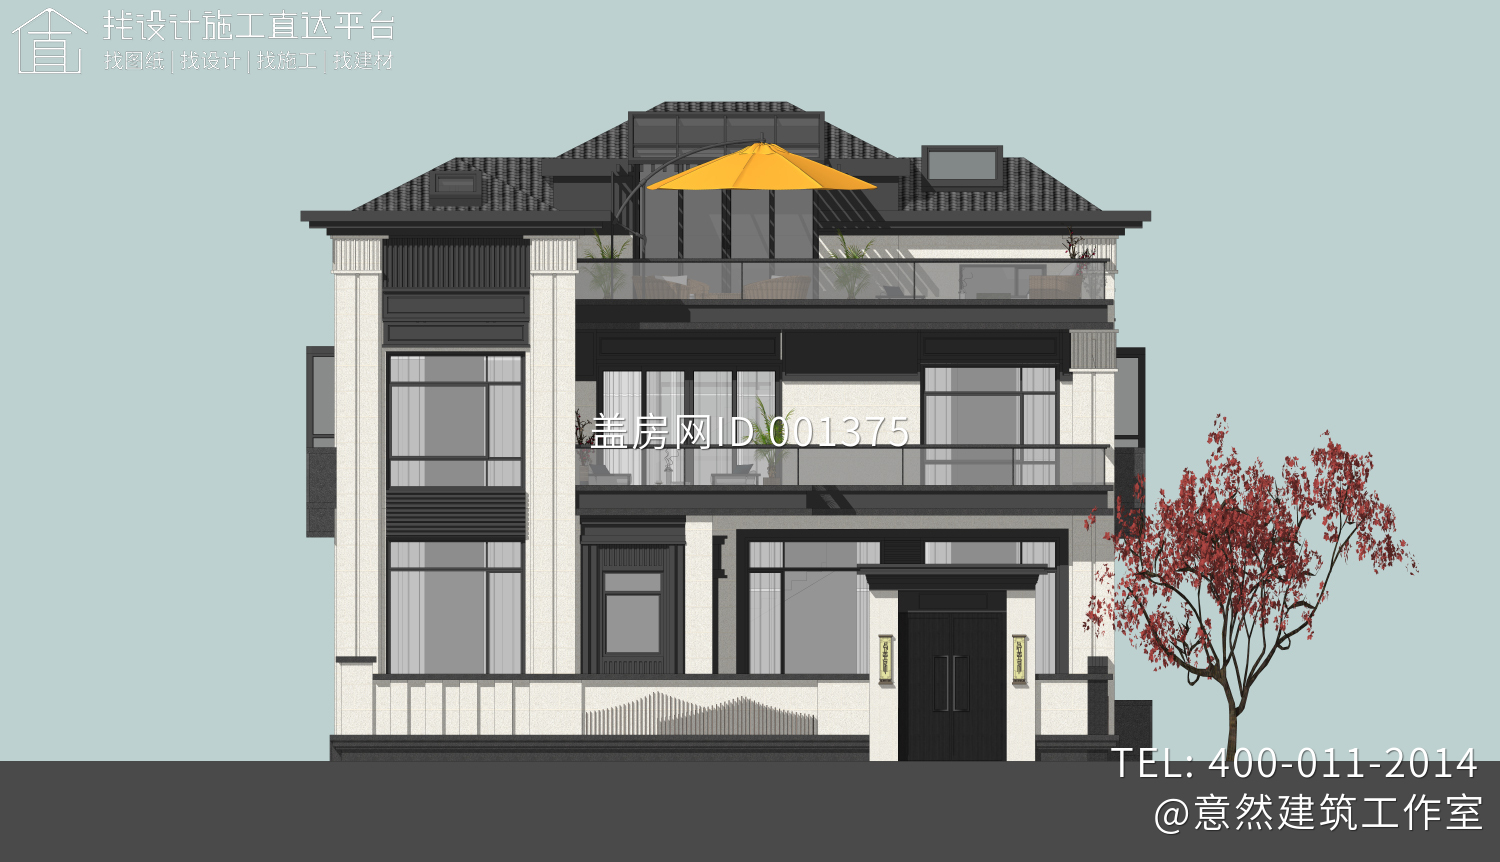 北京密云王家新中式别墅设计图纸